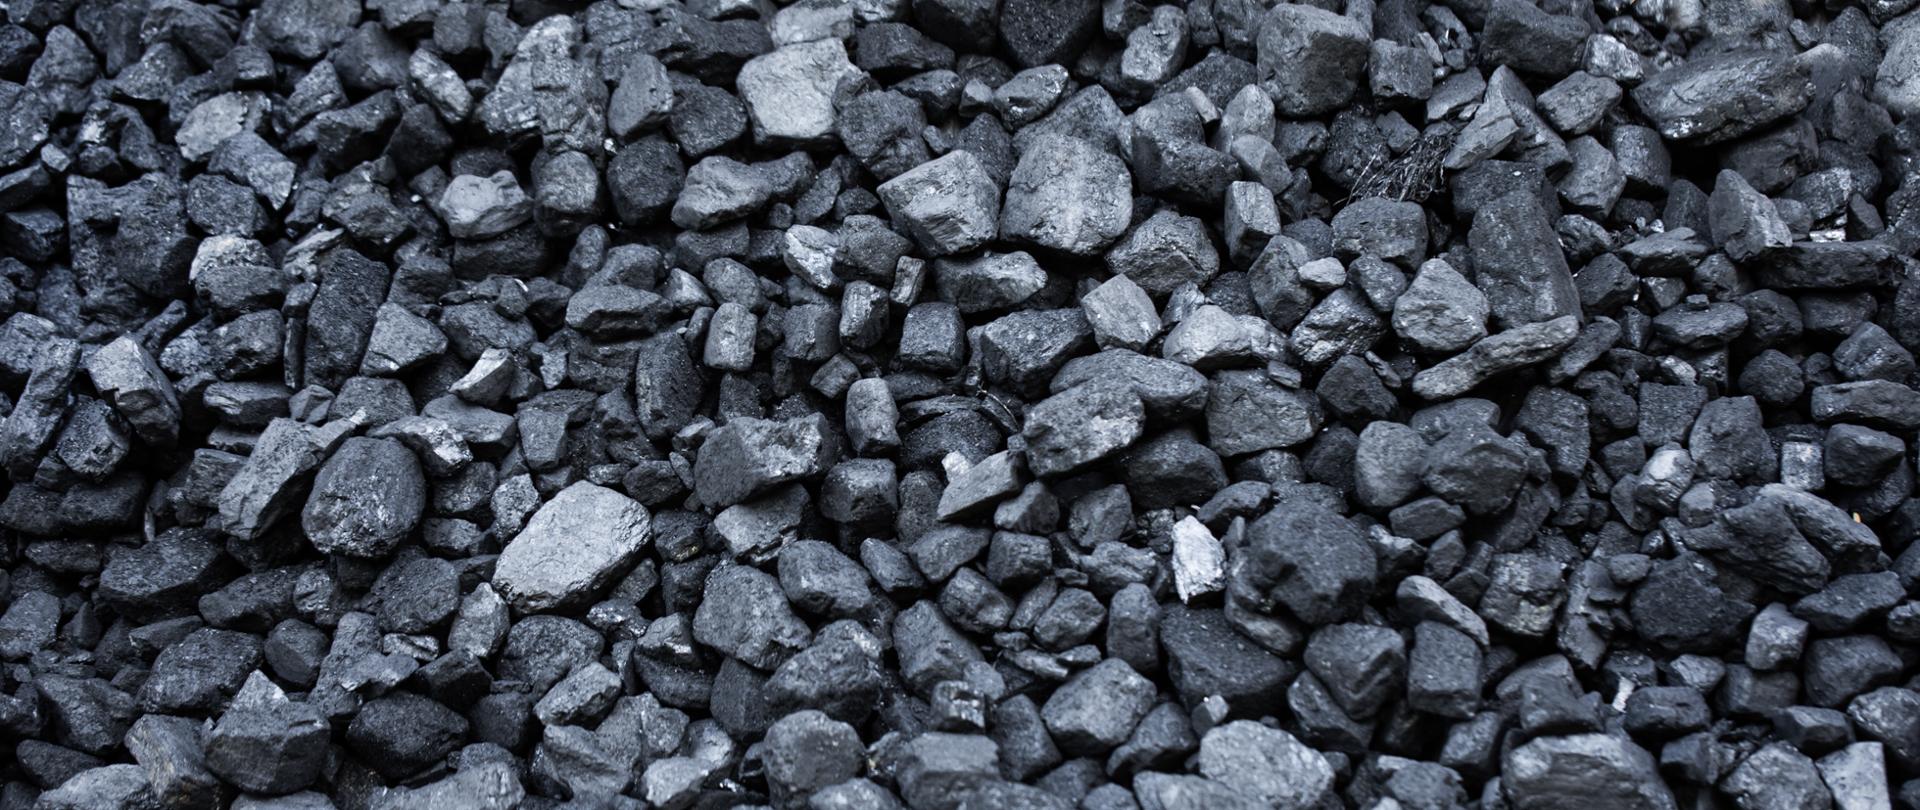 Węgiel - zdjęcie przedstawia węgiel kamienny